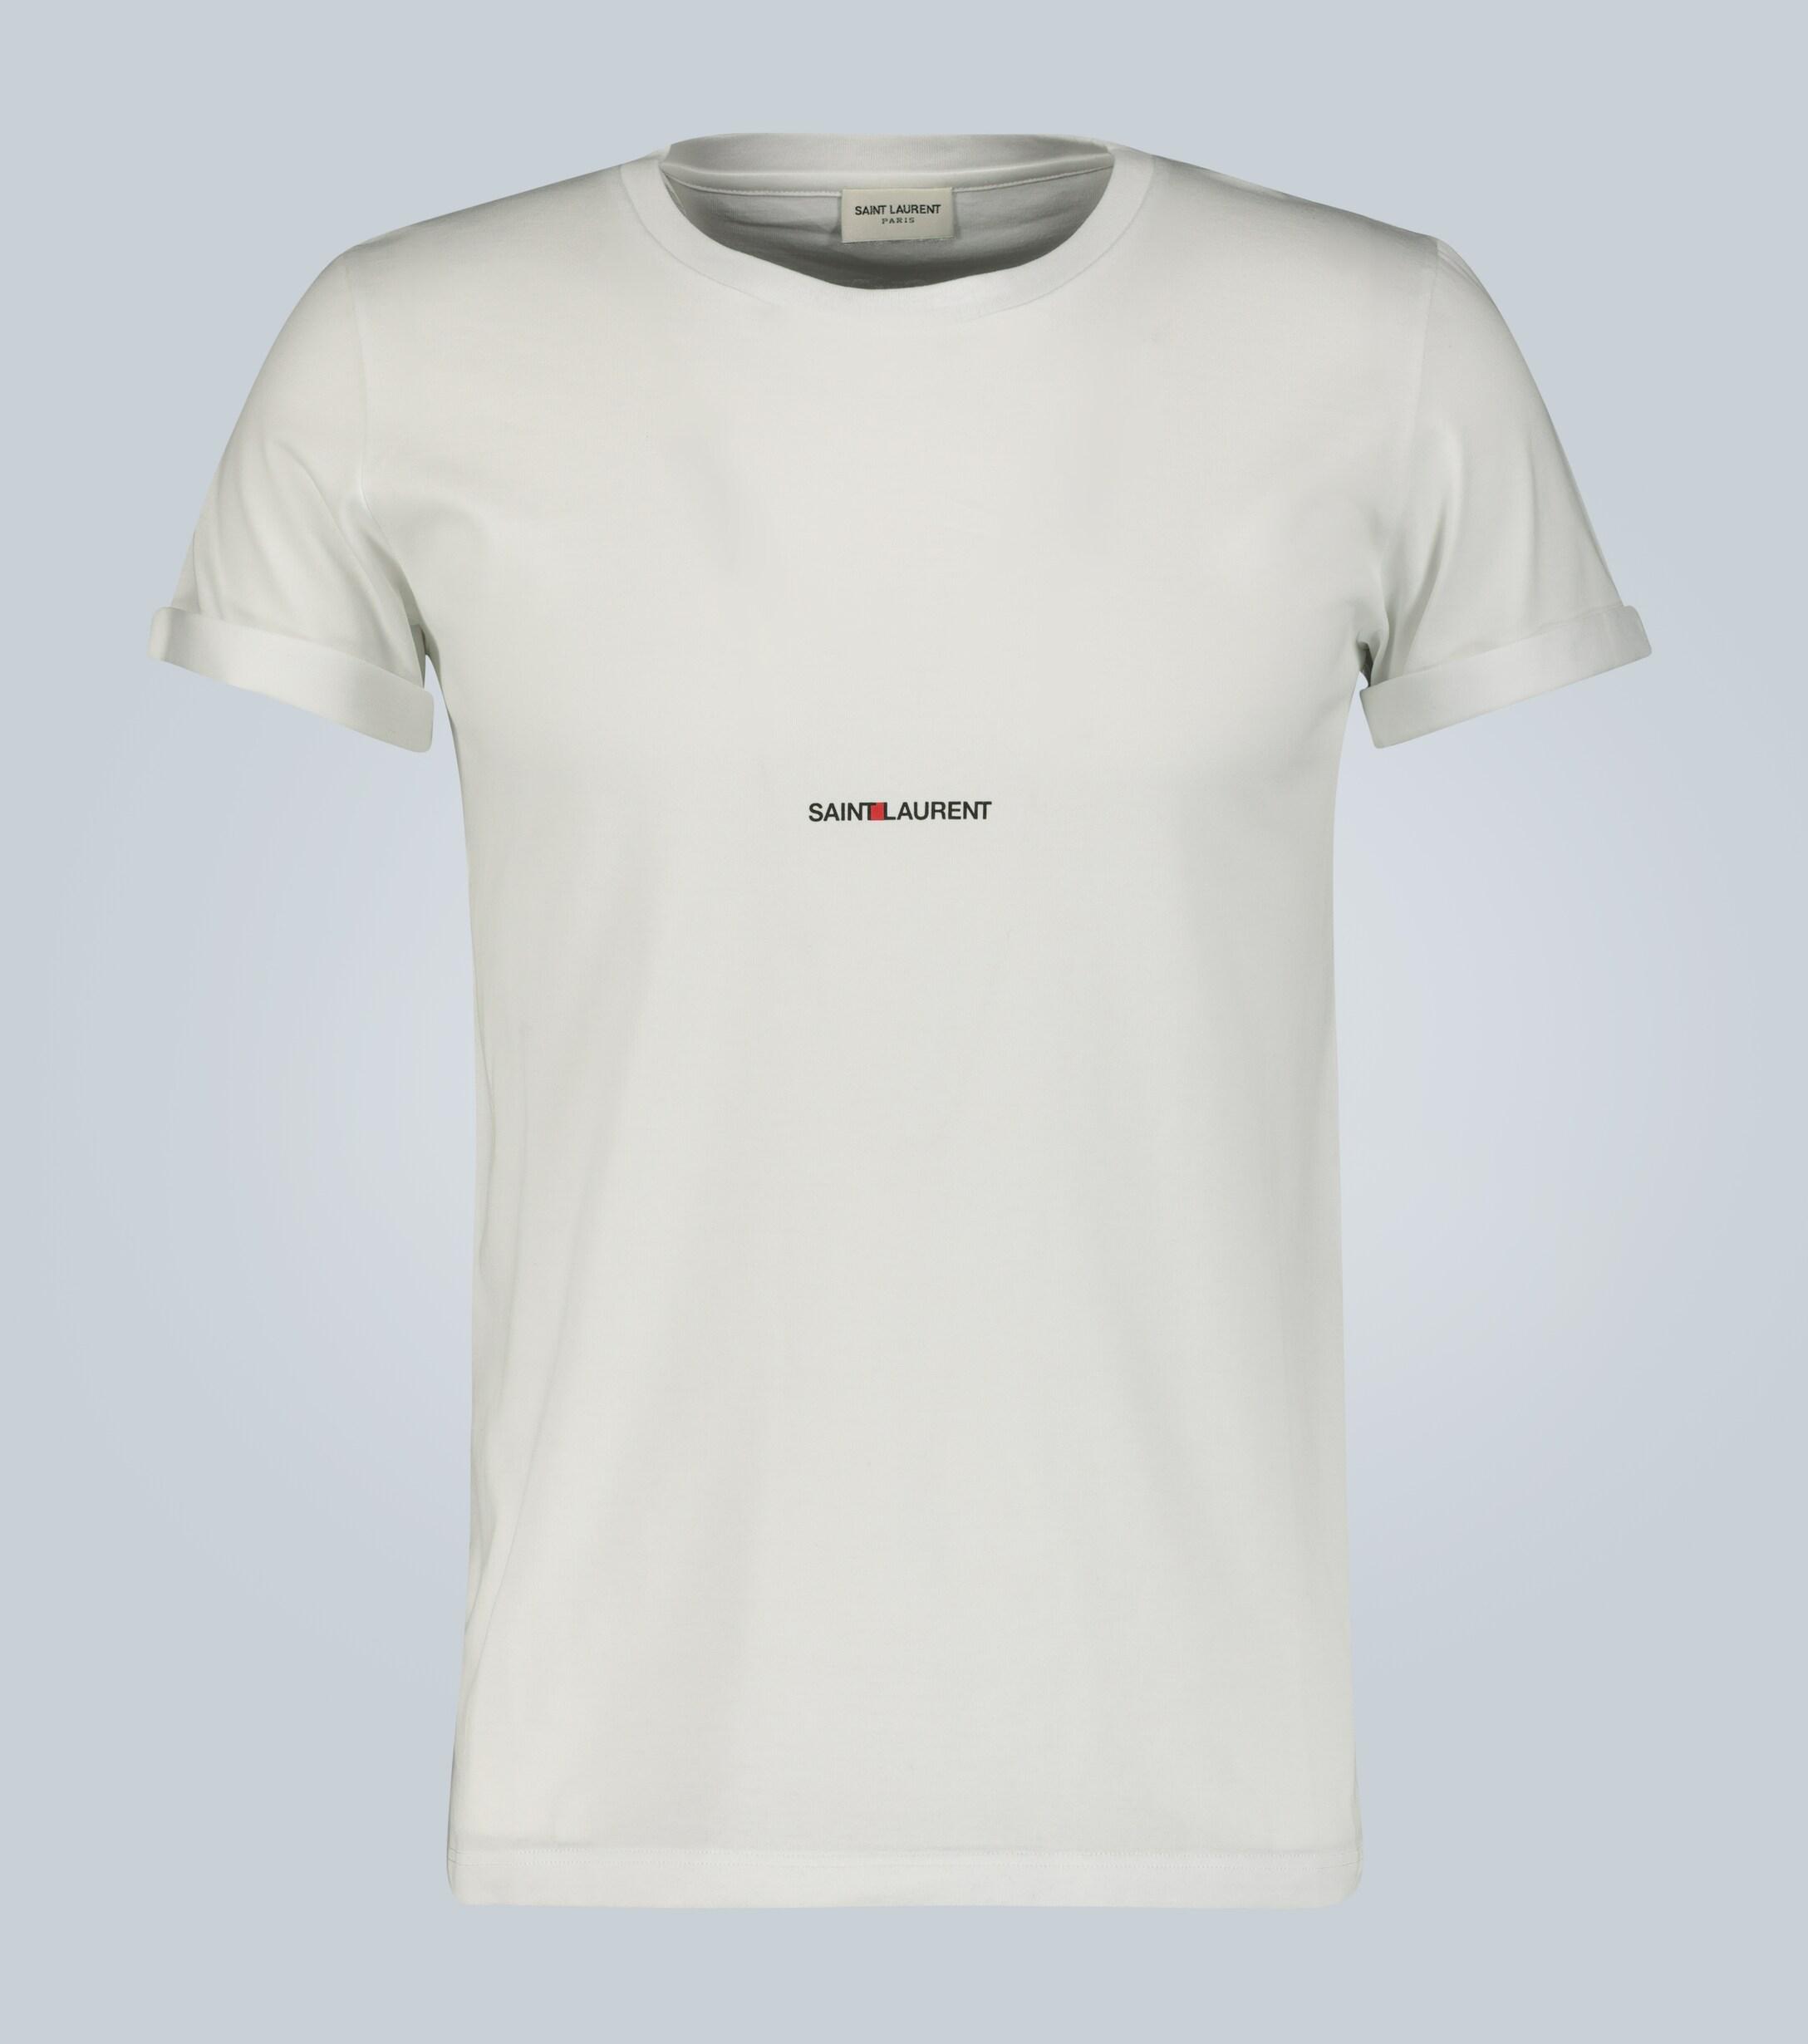 Saint Laurent Signature Logo Cotton T-shirt in White for Men - Lyst